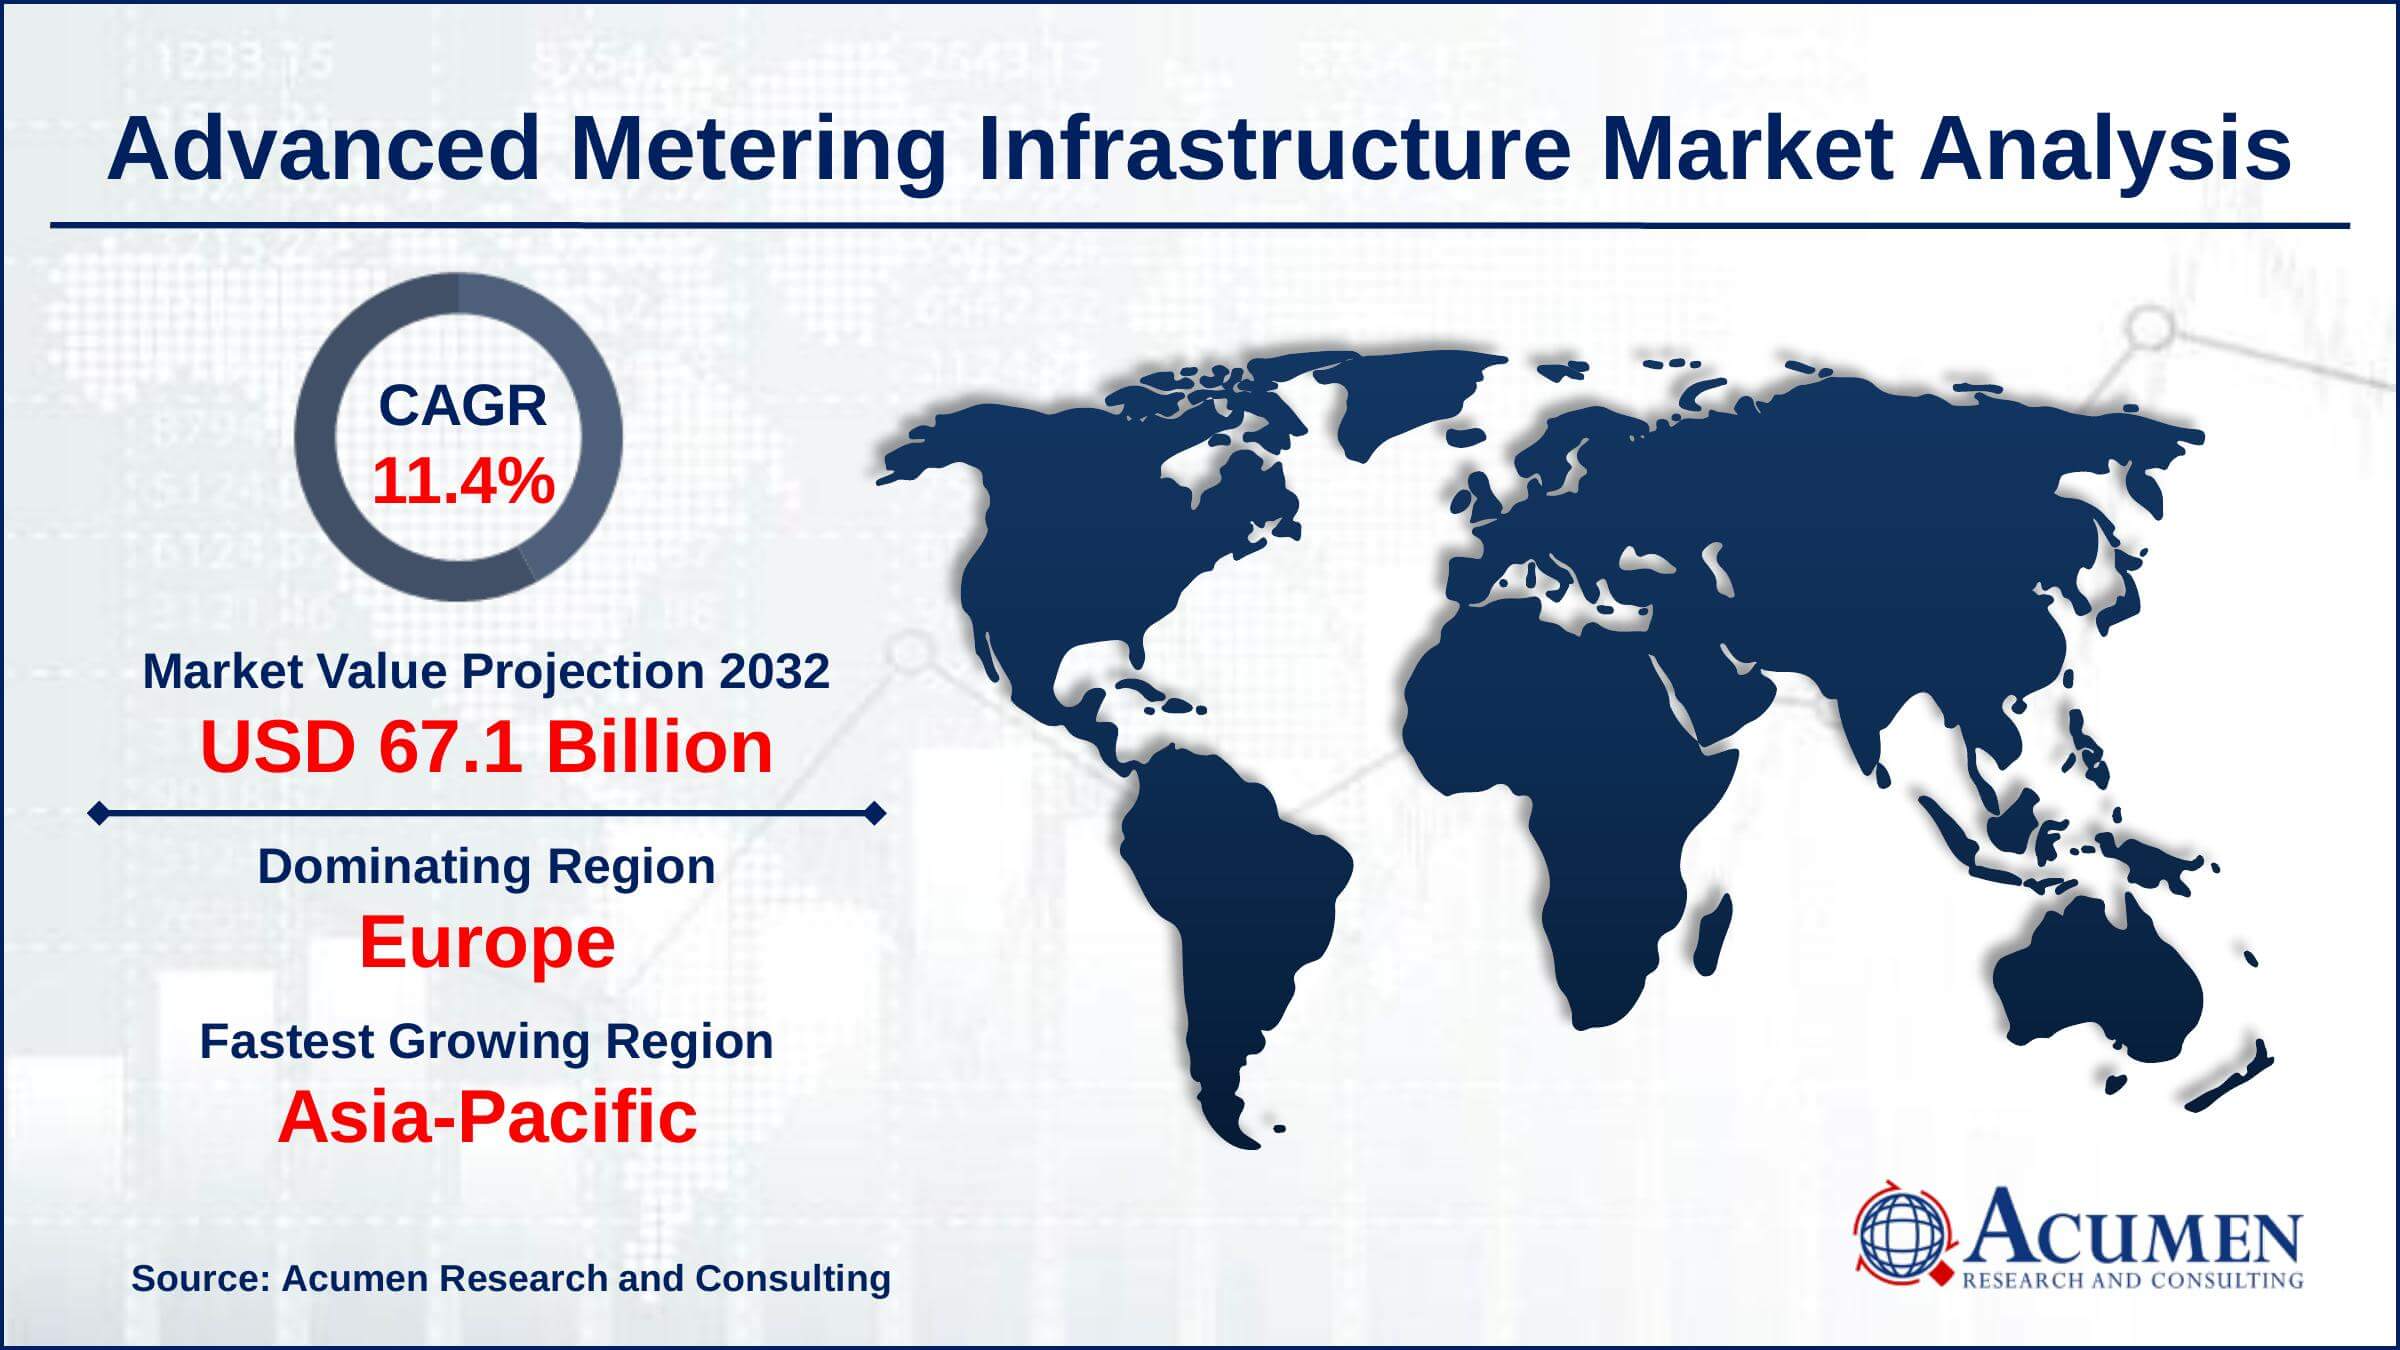 Global Advanced Metering Infrastructure Market Trends